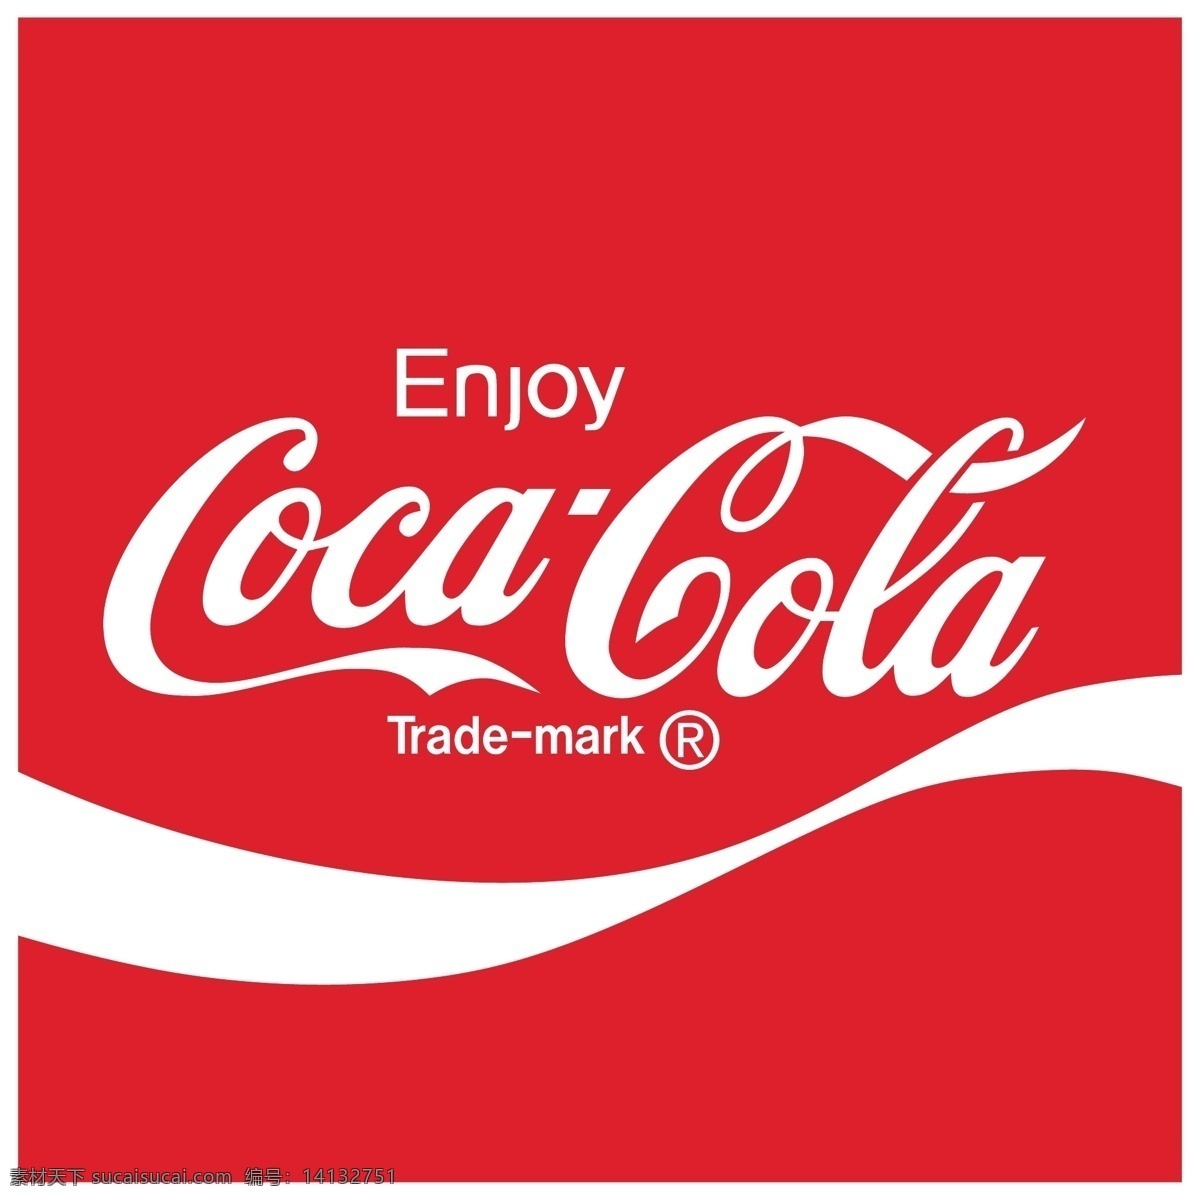 可口可乐 标志 可口可乐标志 海报 可乐海报 字体 可乐单页素材 其他海报设计